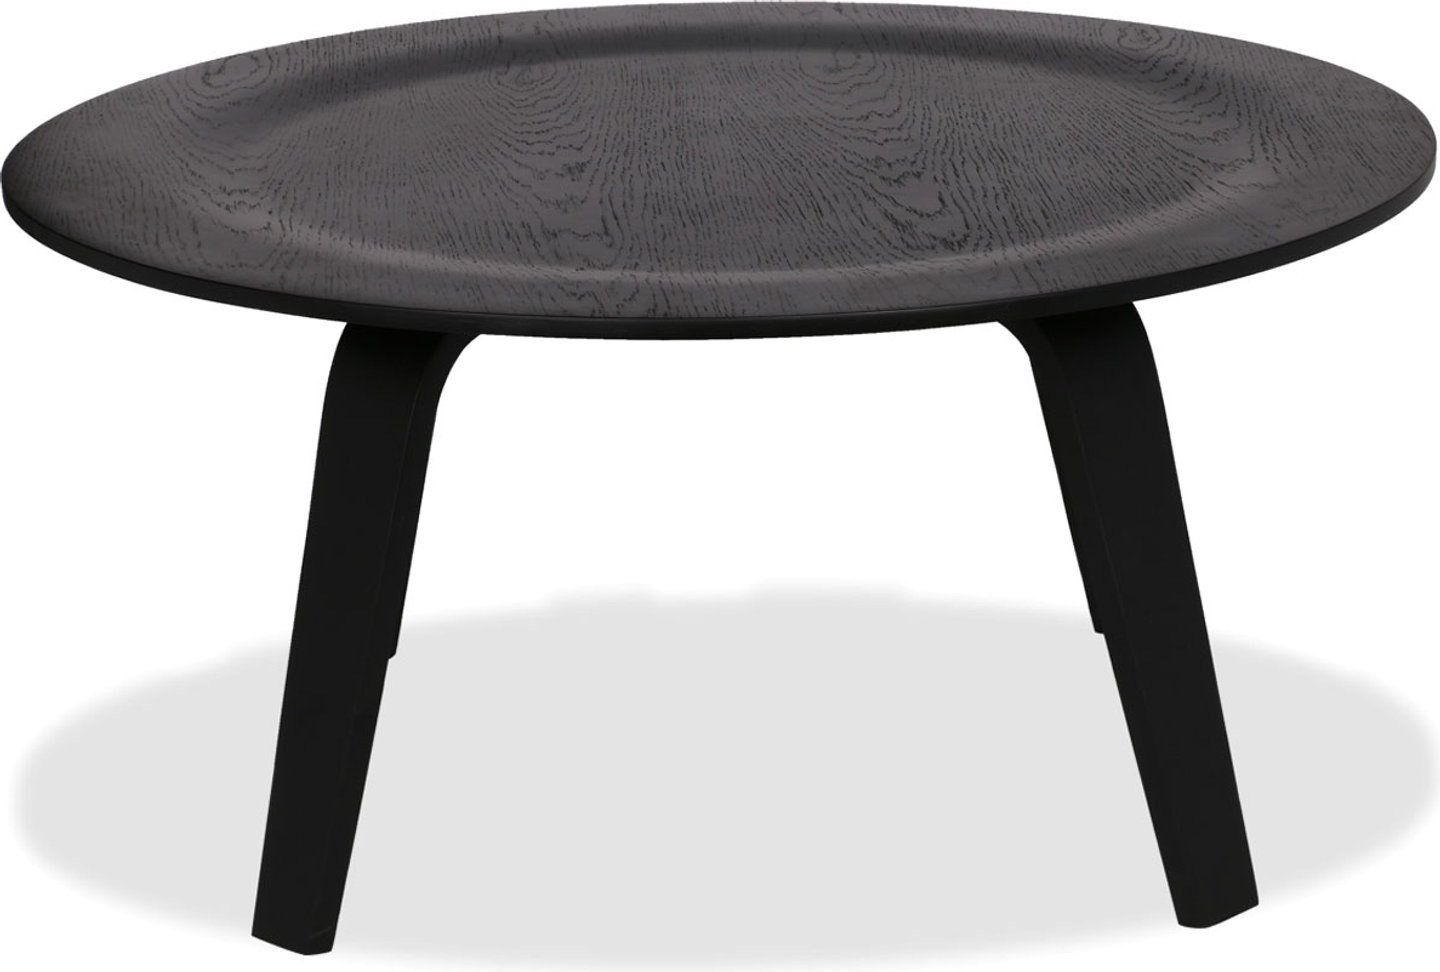 Sofabord i kryssfiner i Eames-stil Black image.